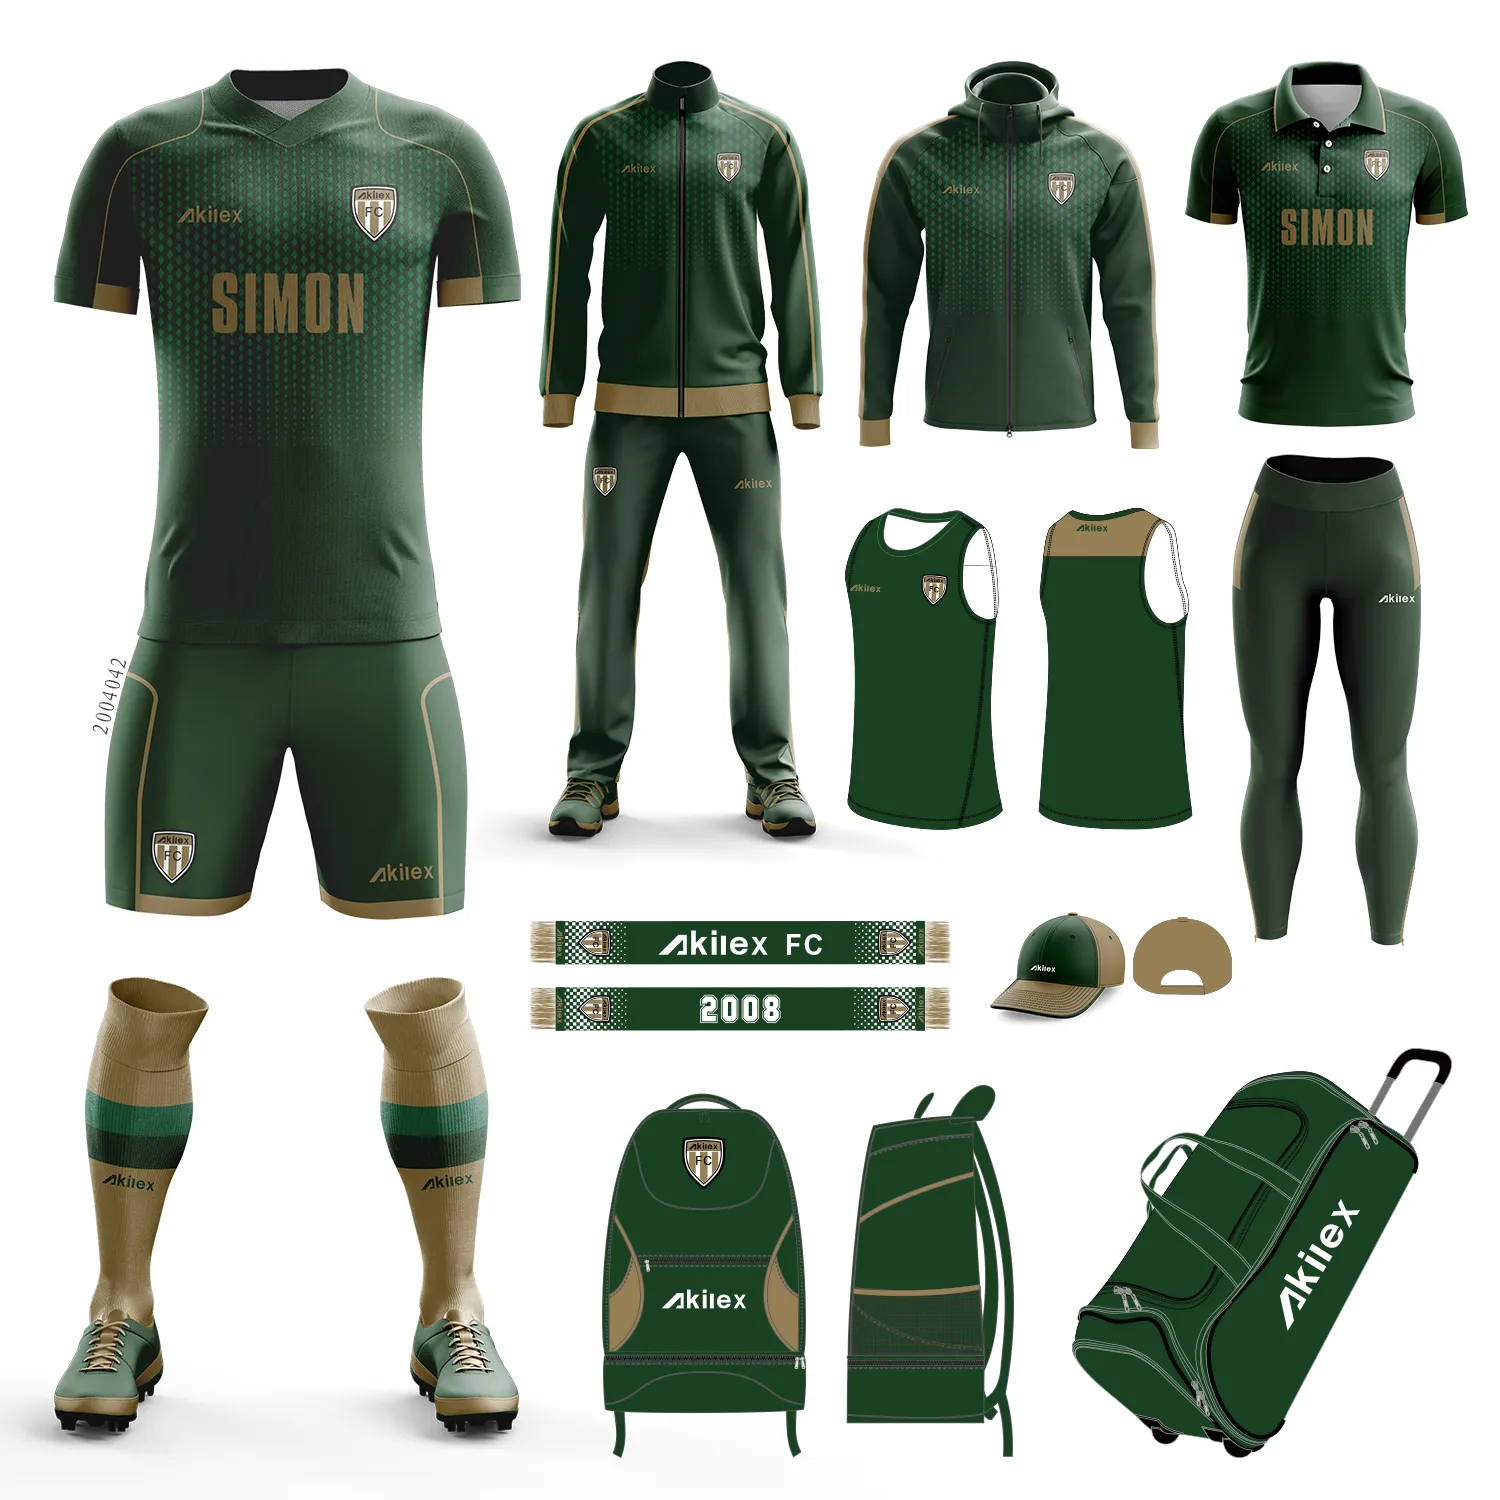 Sportswear Factory maßge schneiderte Sublimation schlichte Premium-Qualität Fußball Teamwear New Design Männer Fußball Uniformen